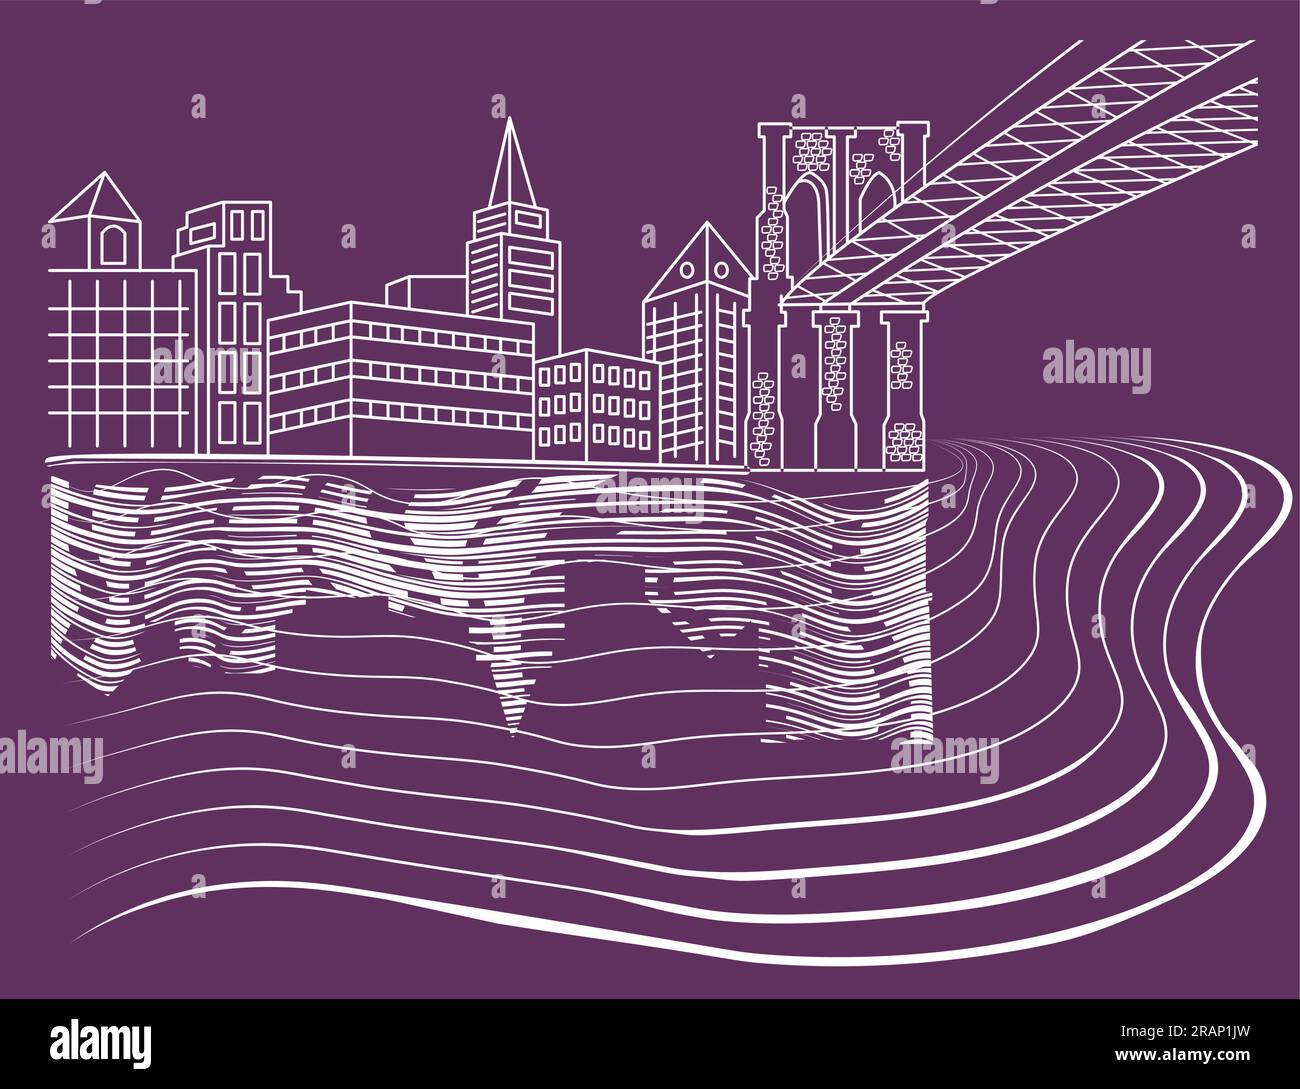 Die nächtliche Umrisslandschaft des städtischen Gebiets in Flussnähe mit Silhouetten von Gebäuden und Brücken auf transparentem Hintergrund Stock Vektor